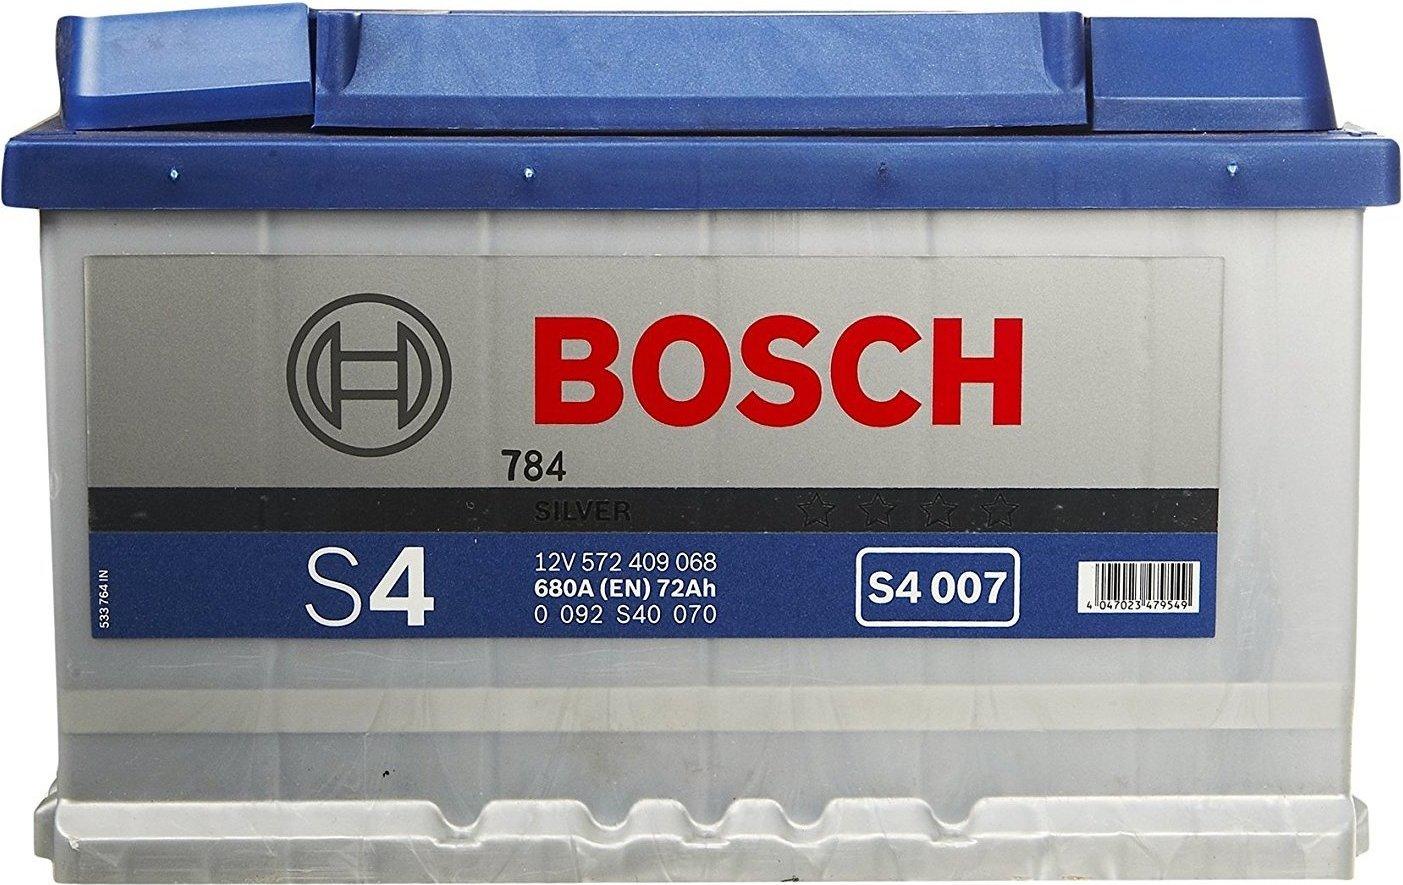 Bosch S4 12V 72Ah (0 092 S40 070) Erfahrungen 5/5 Sternen